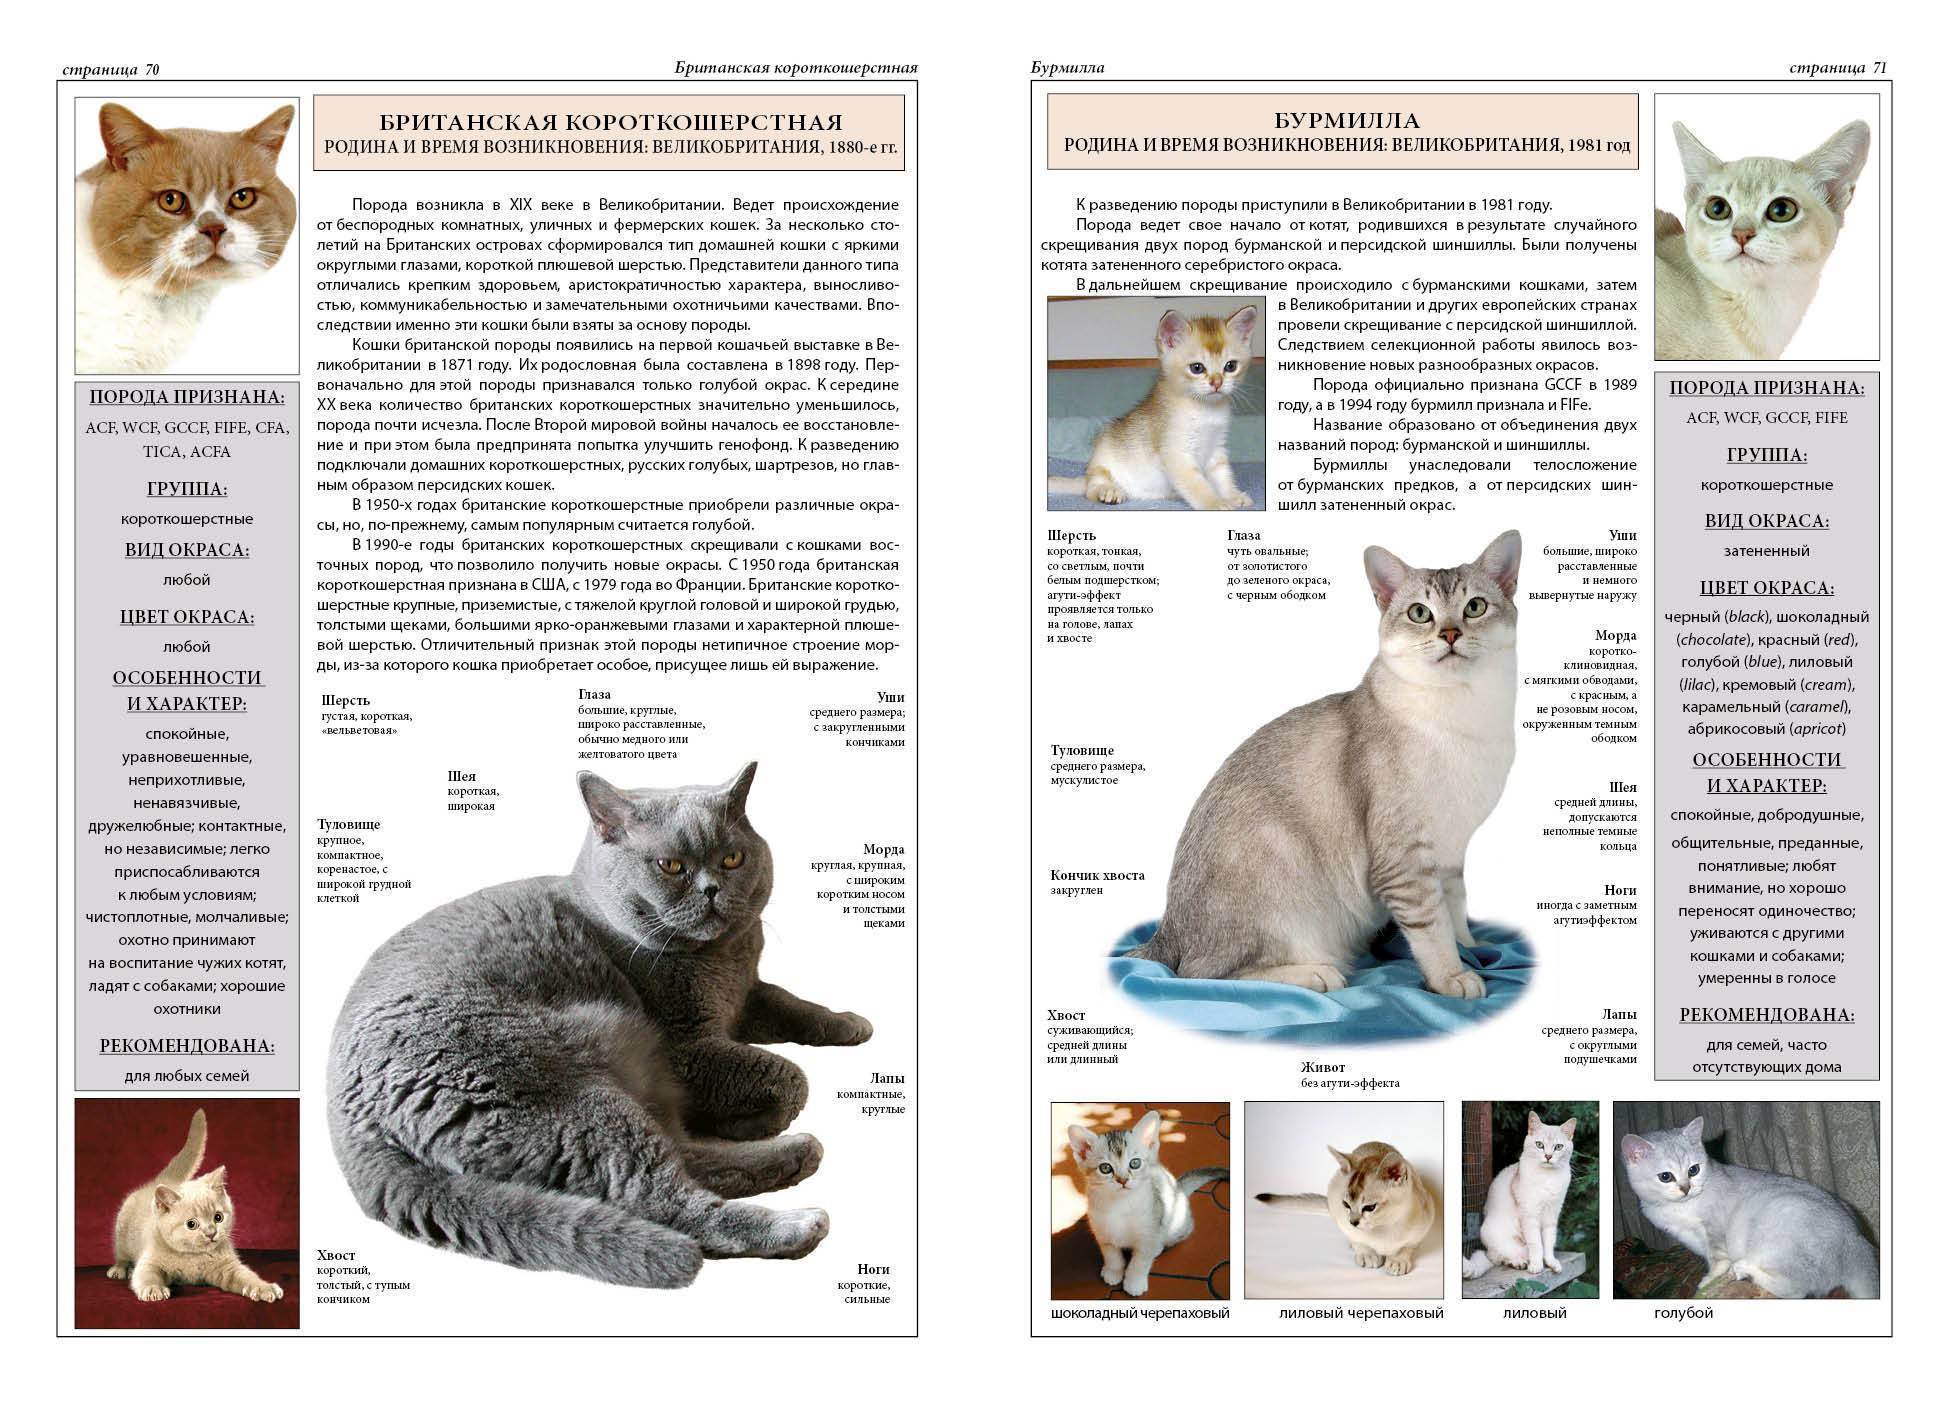 Список популярных пород кошек с фотографиями и описанием